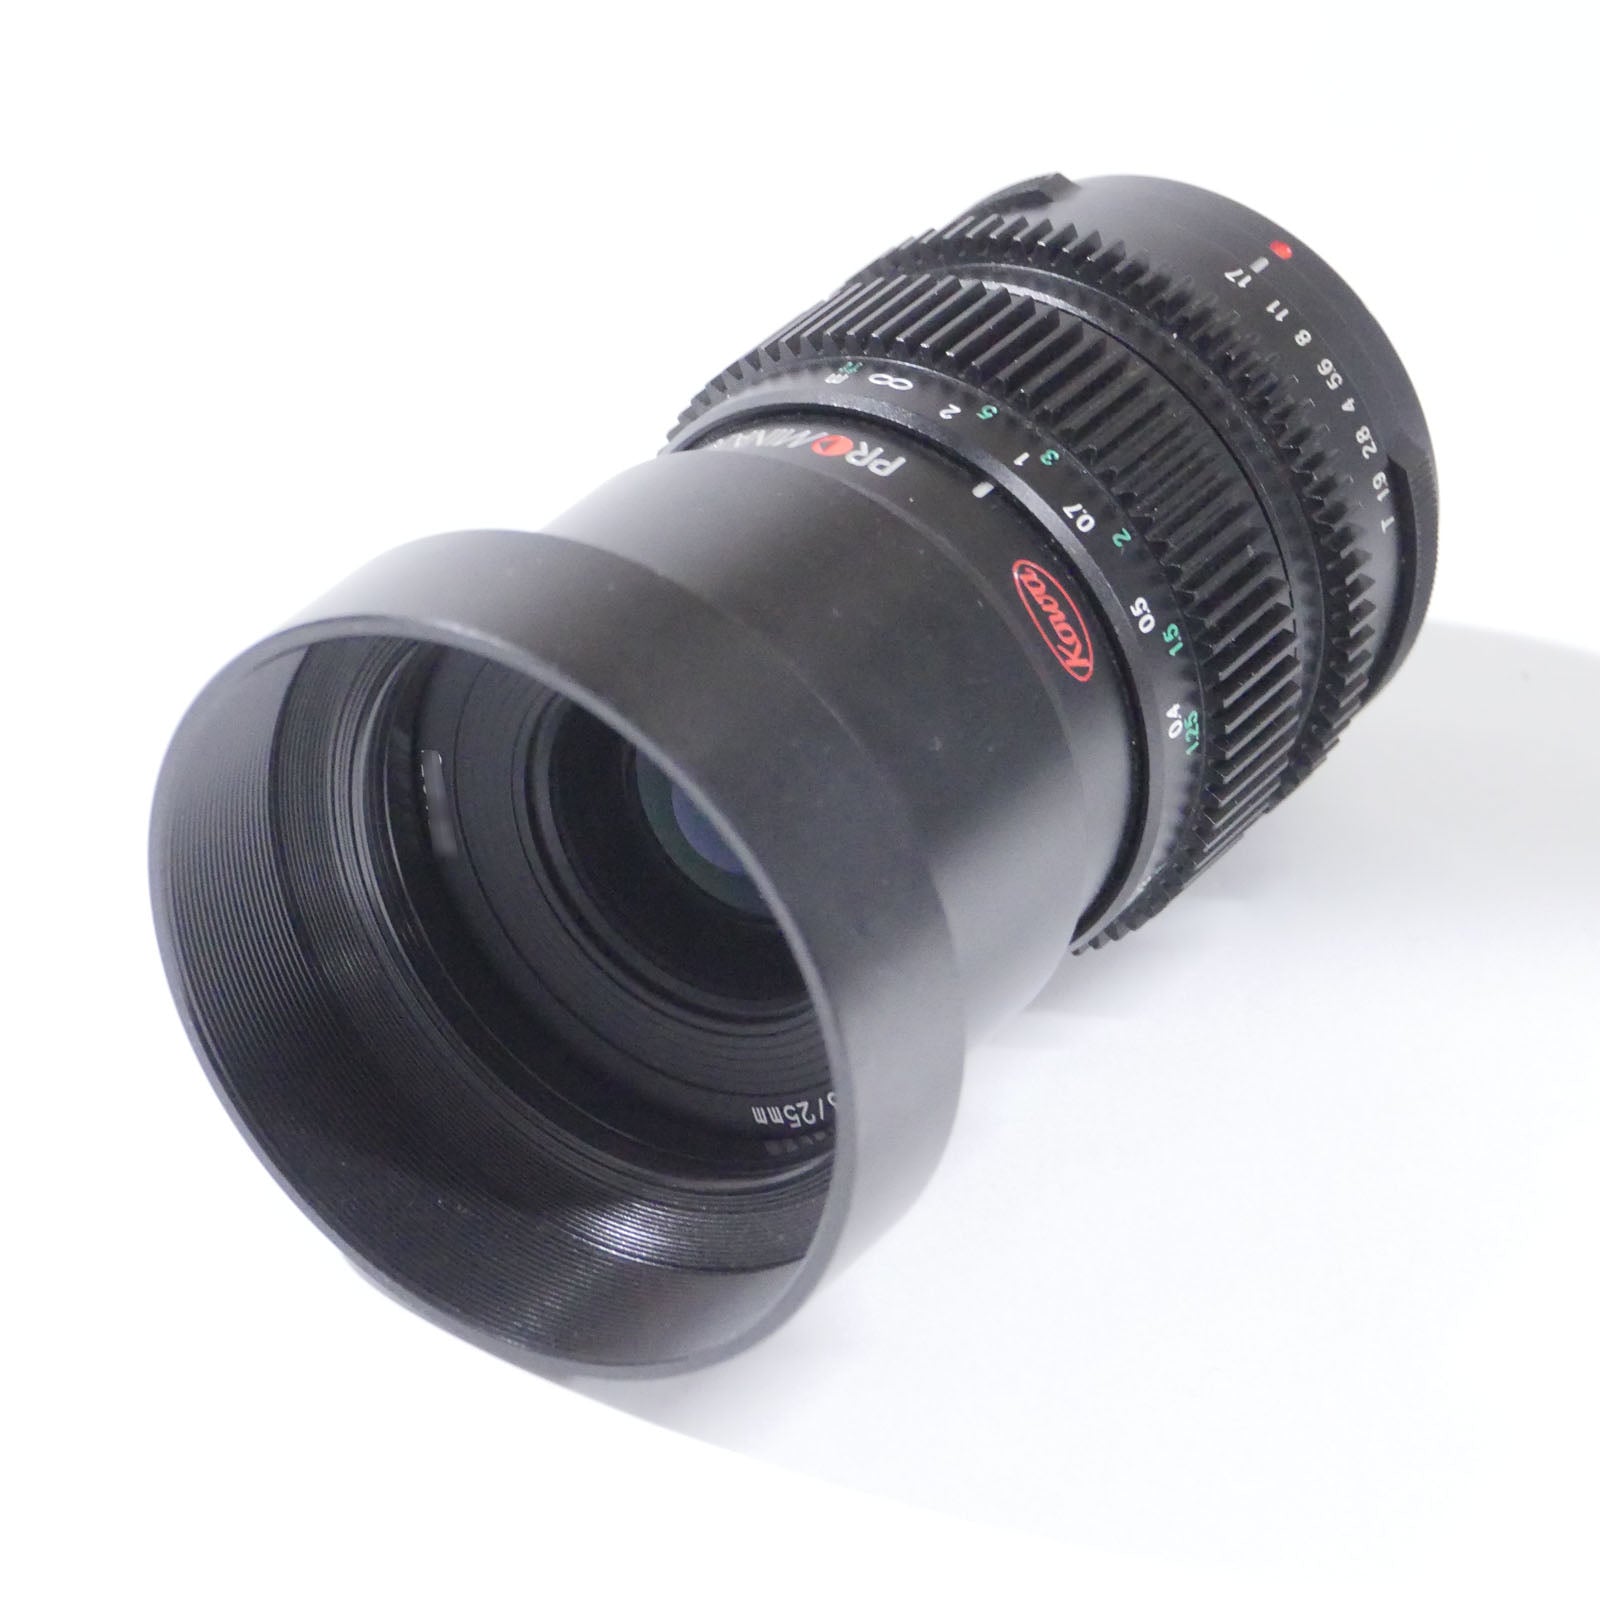 KOWA(興和) マイクロフォーサーズマウント単焦点レンズ PROMINAR 25mm F1.8 中古品